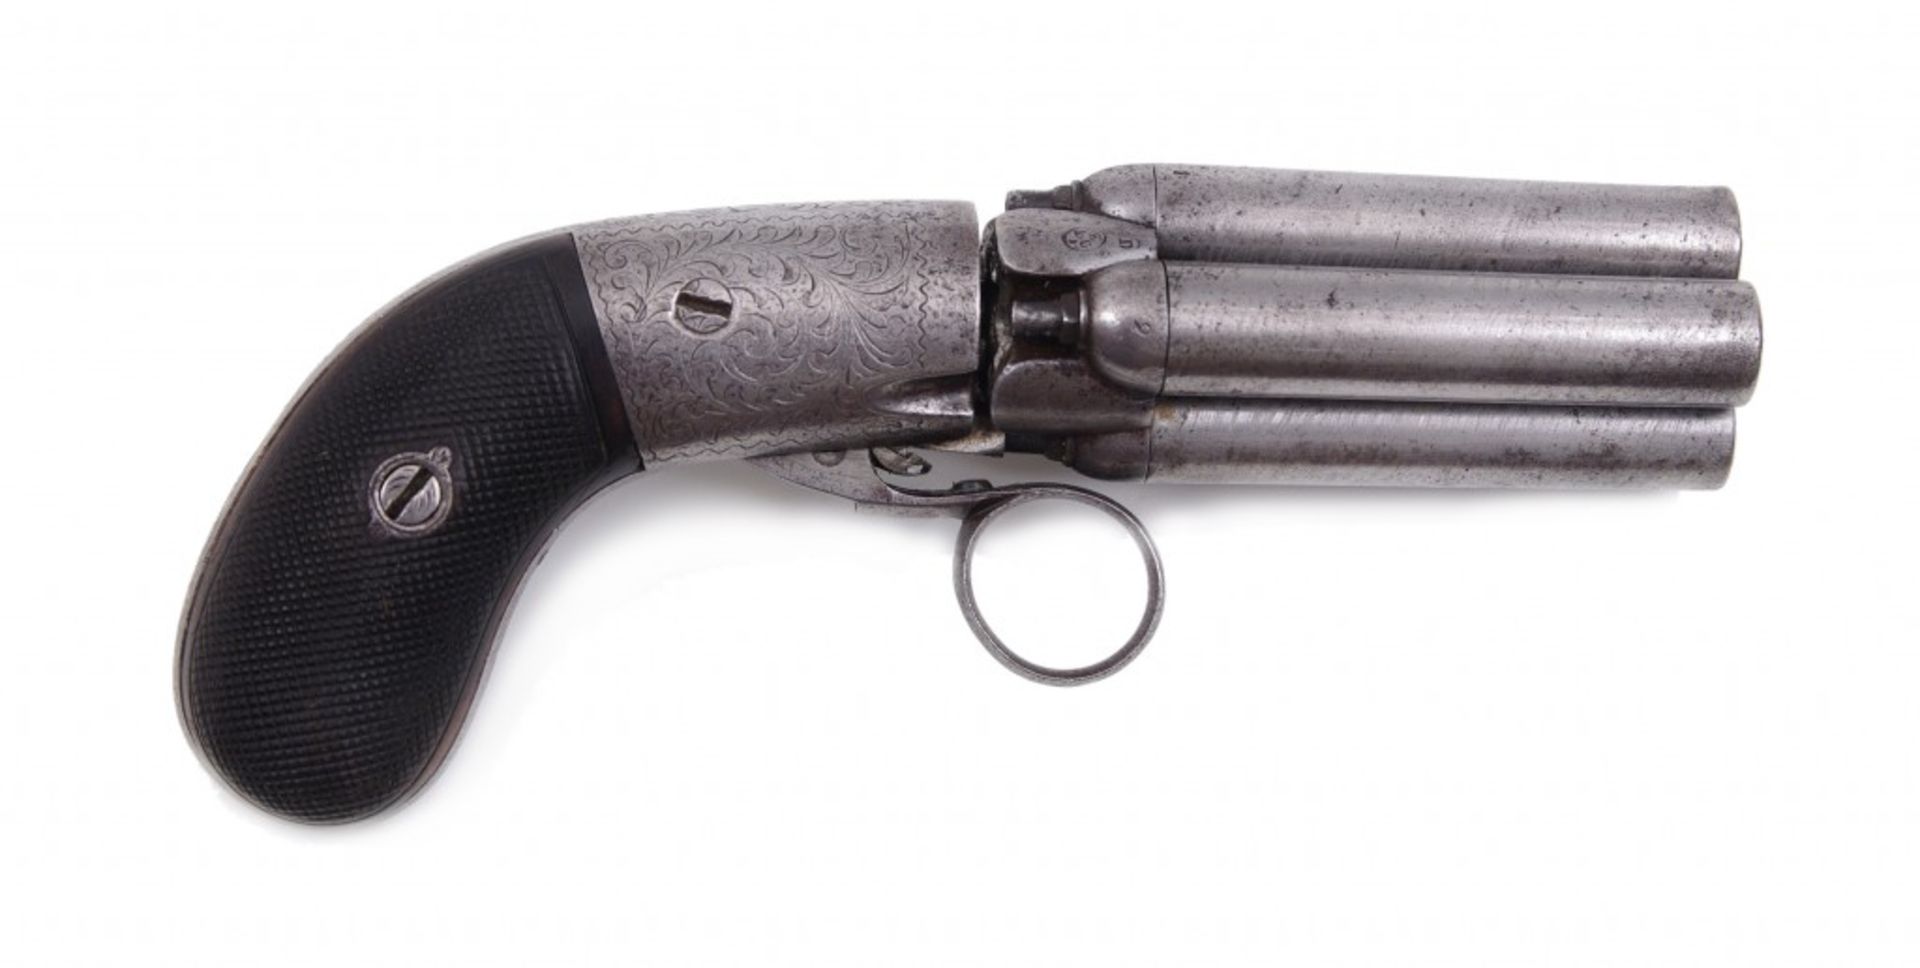 A four-shot pepperbox pistol